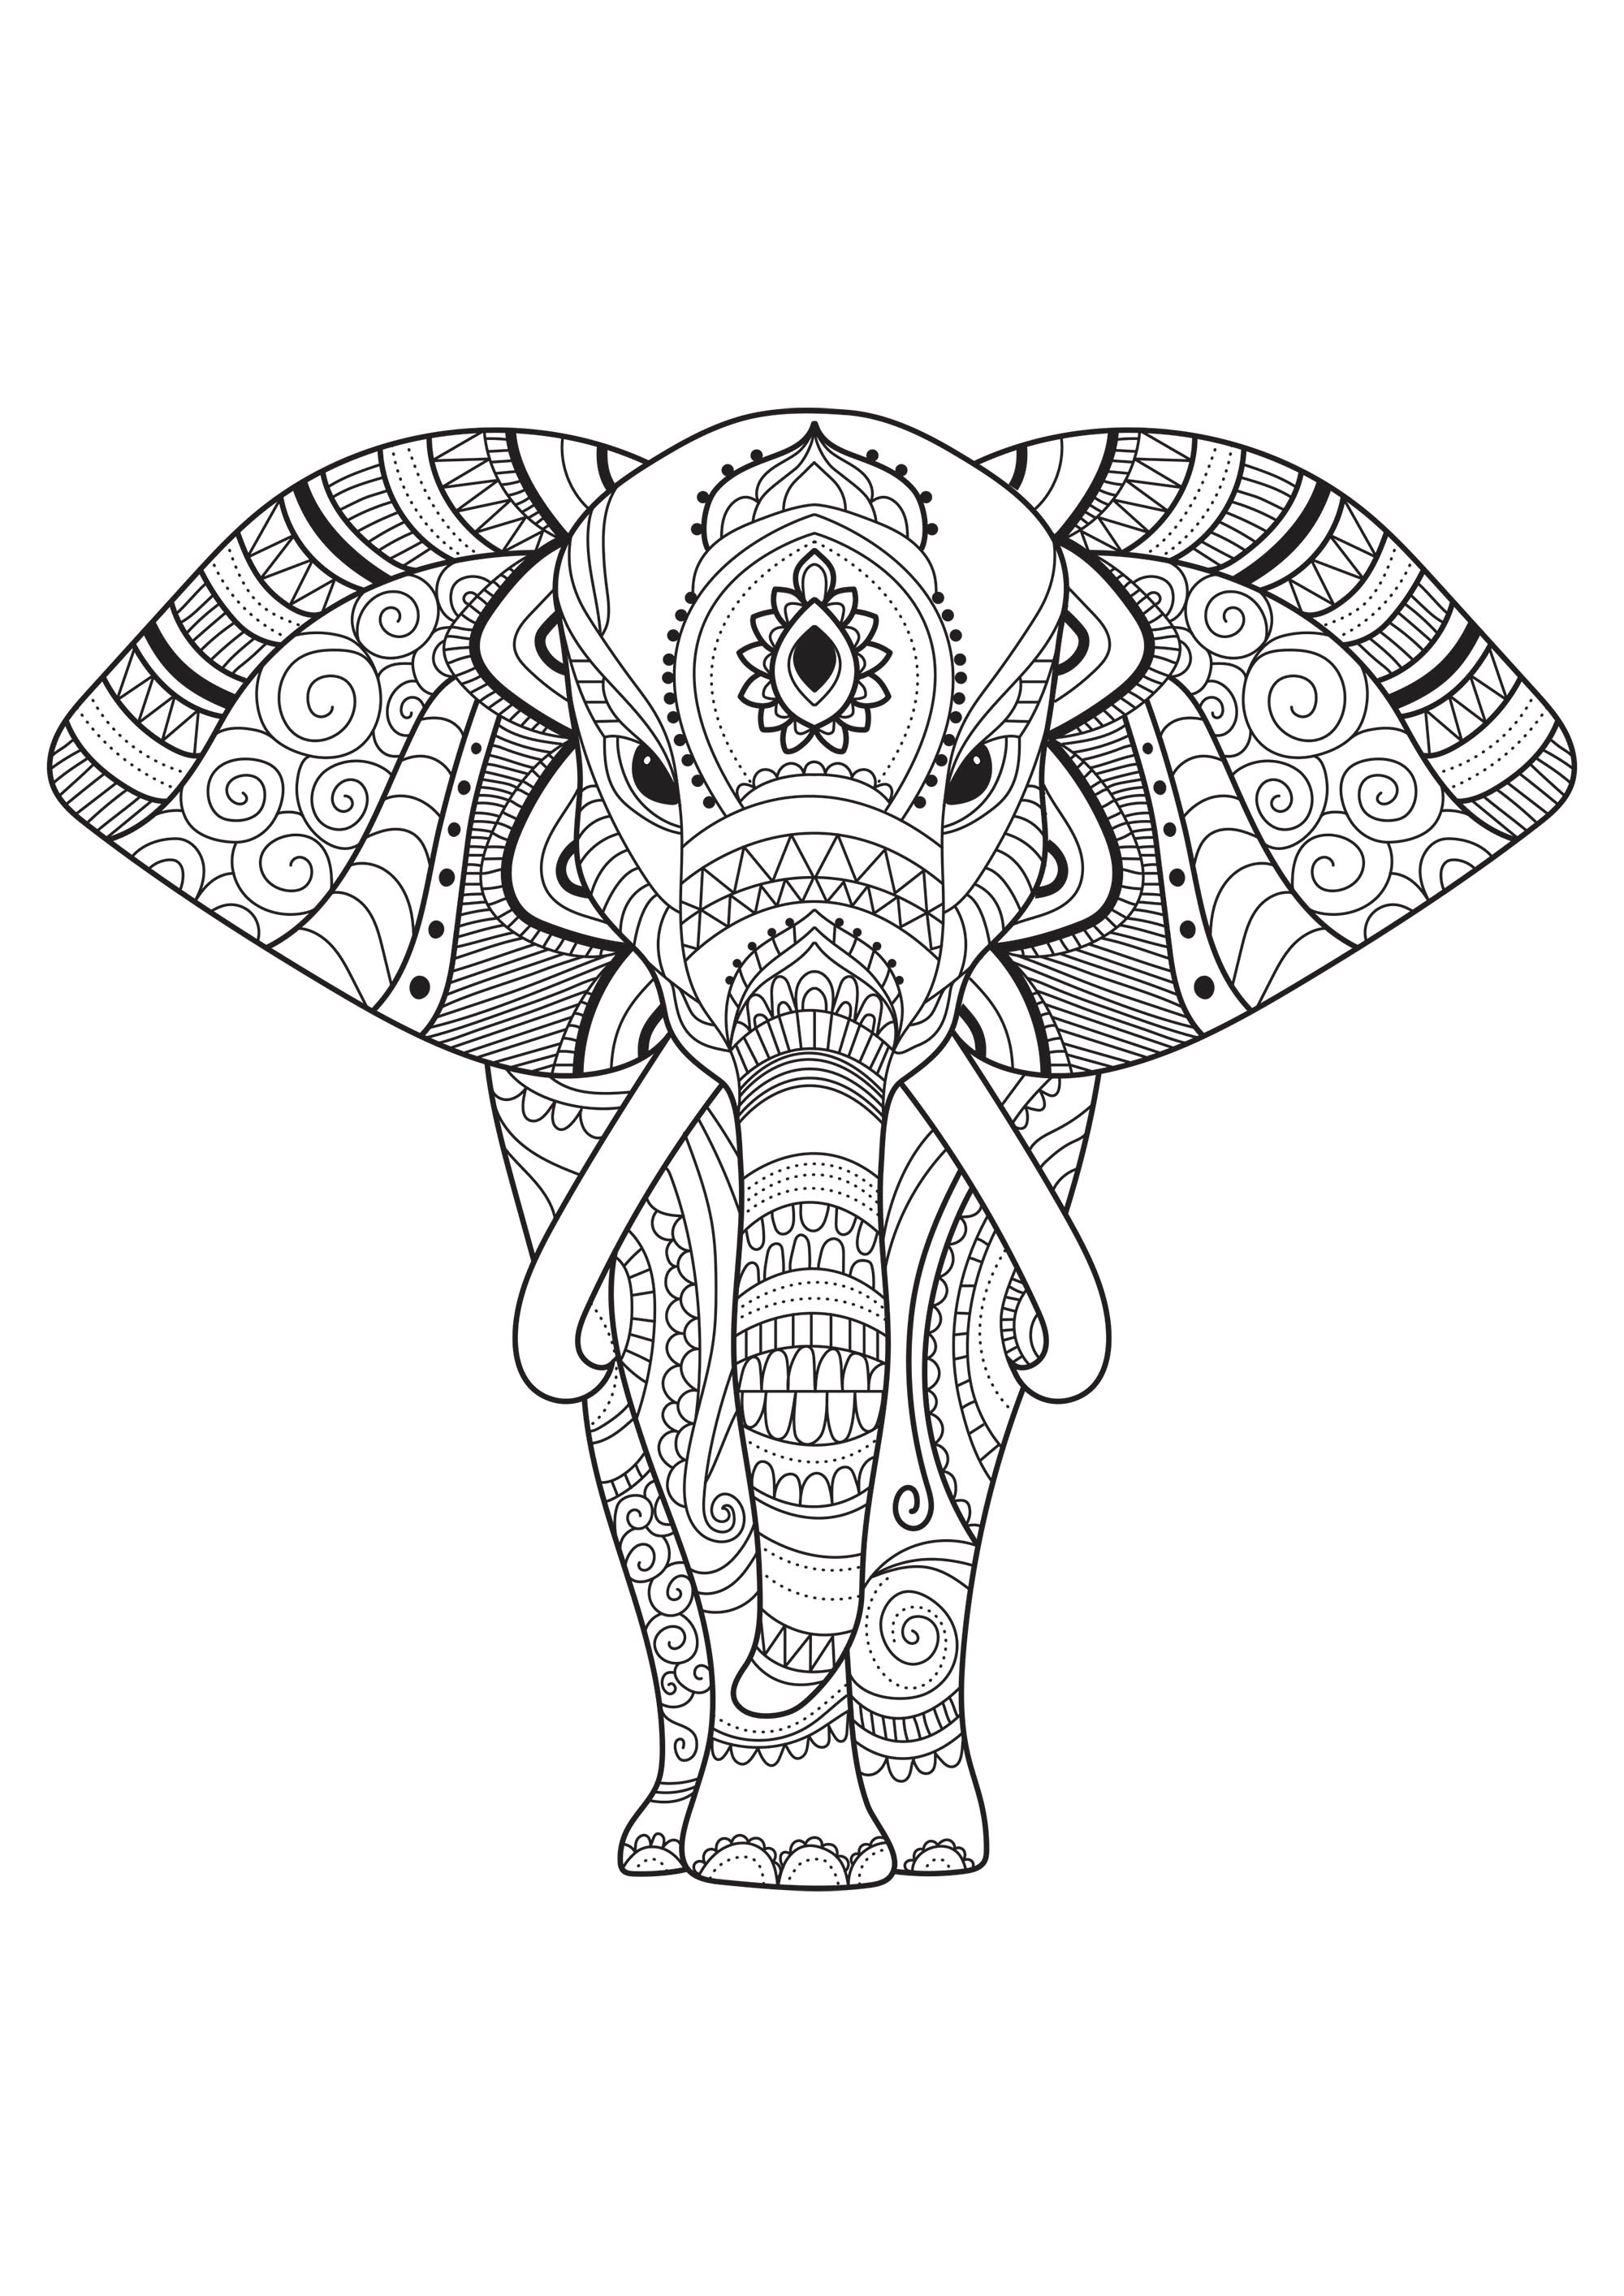 Sencillos dibujos para colorear de este majestuoso elefante. Proporcionado por el sitio Gifts.com, Artista : Gifts.com